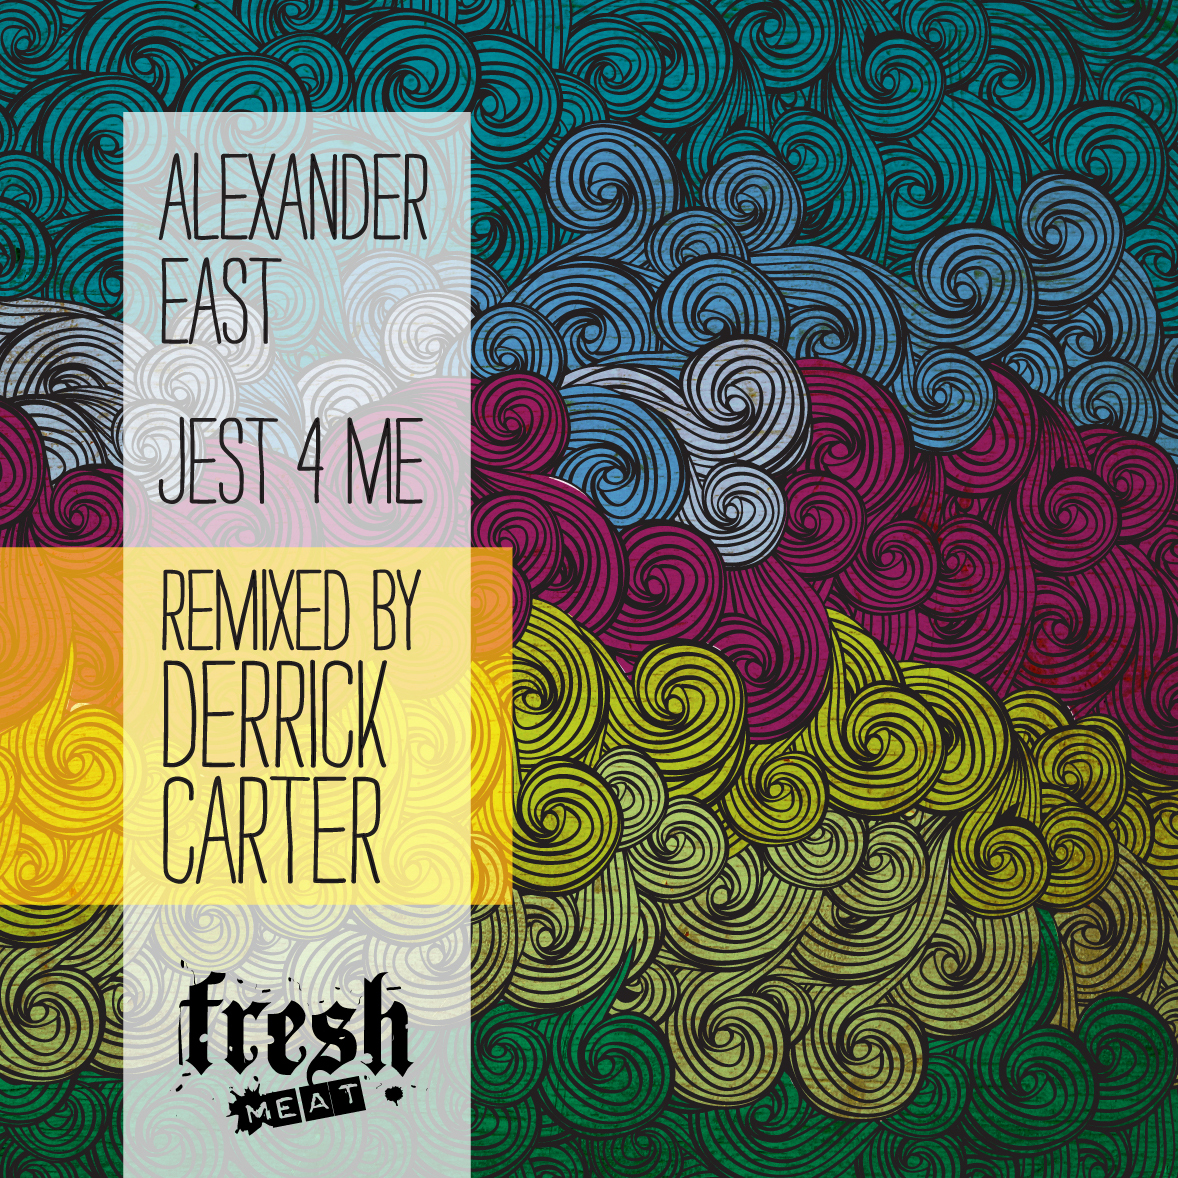 Alexander East - Jest 4 Me (Incl. Derrick Carter Mixes)